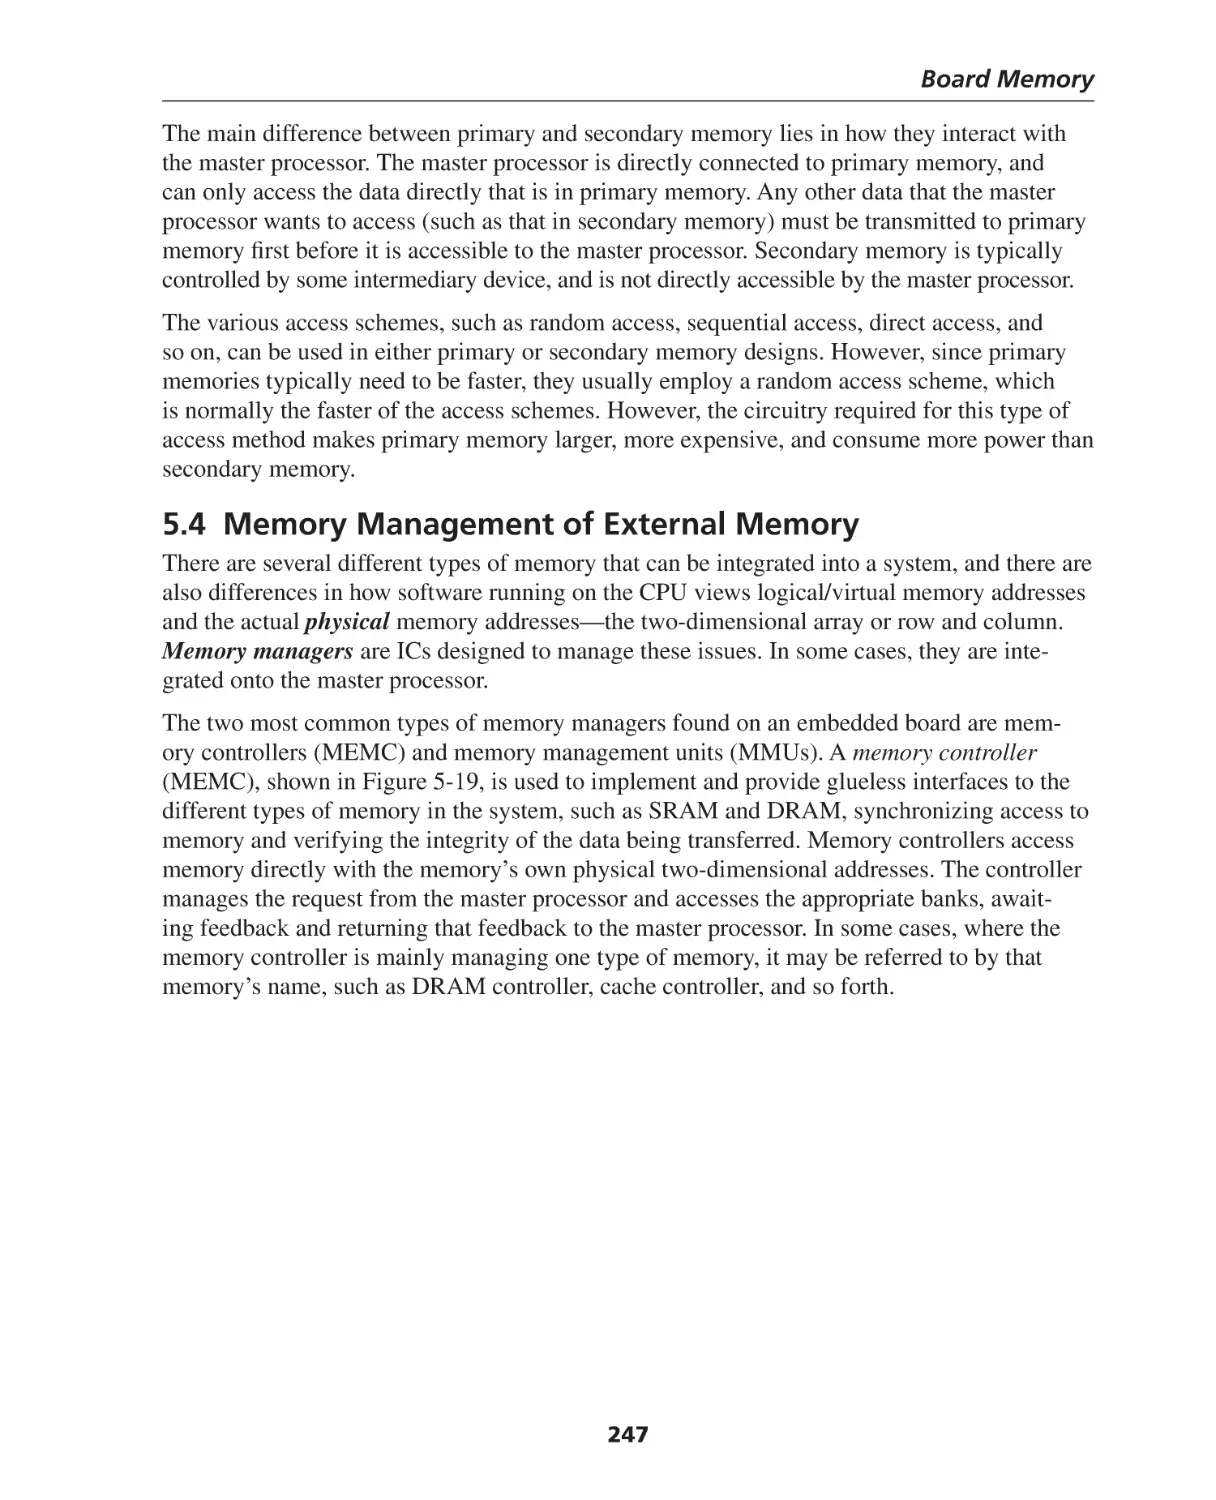 5.4 Memory Management of External Memory